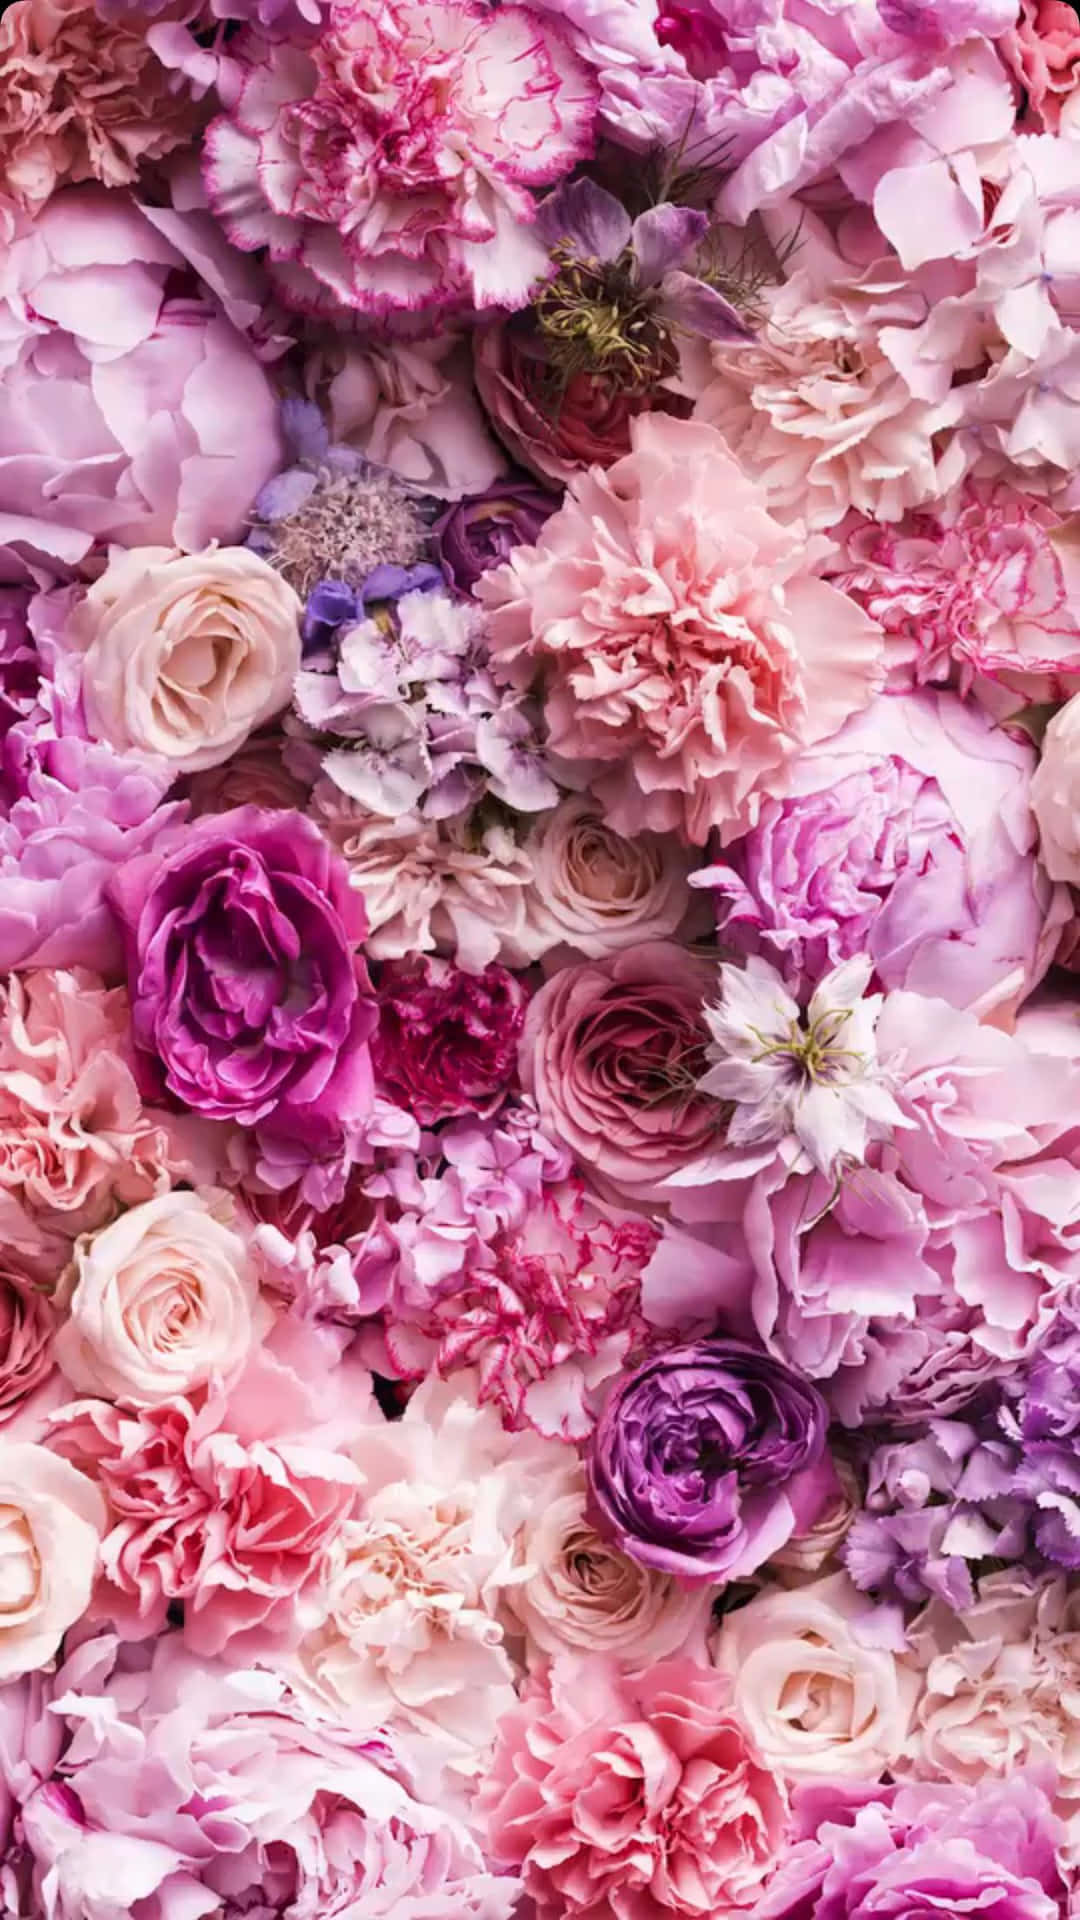 Hình nền hoa hồng màu hồng nhạt cho Iphone là sự kết hợp hài hòa của hoa hồng đẹp và công nghệ hiện đại. Trang trí tấm hình của bạn với những bông hoa hồng màu hồng nhạt tuyệt đẹp này nhé.